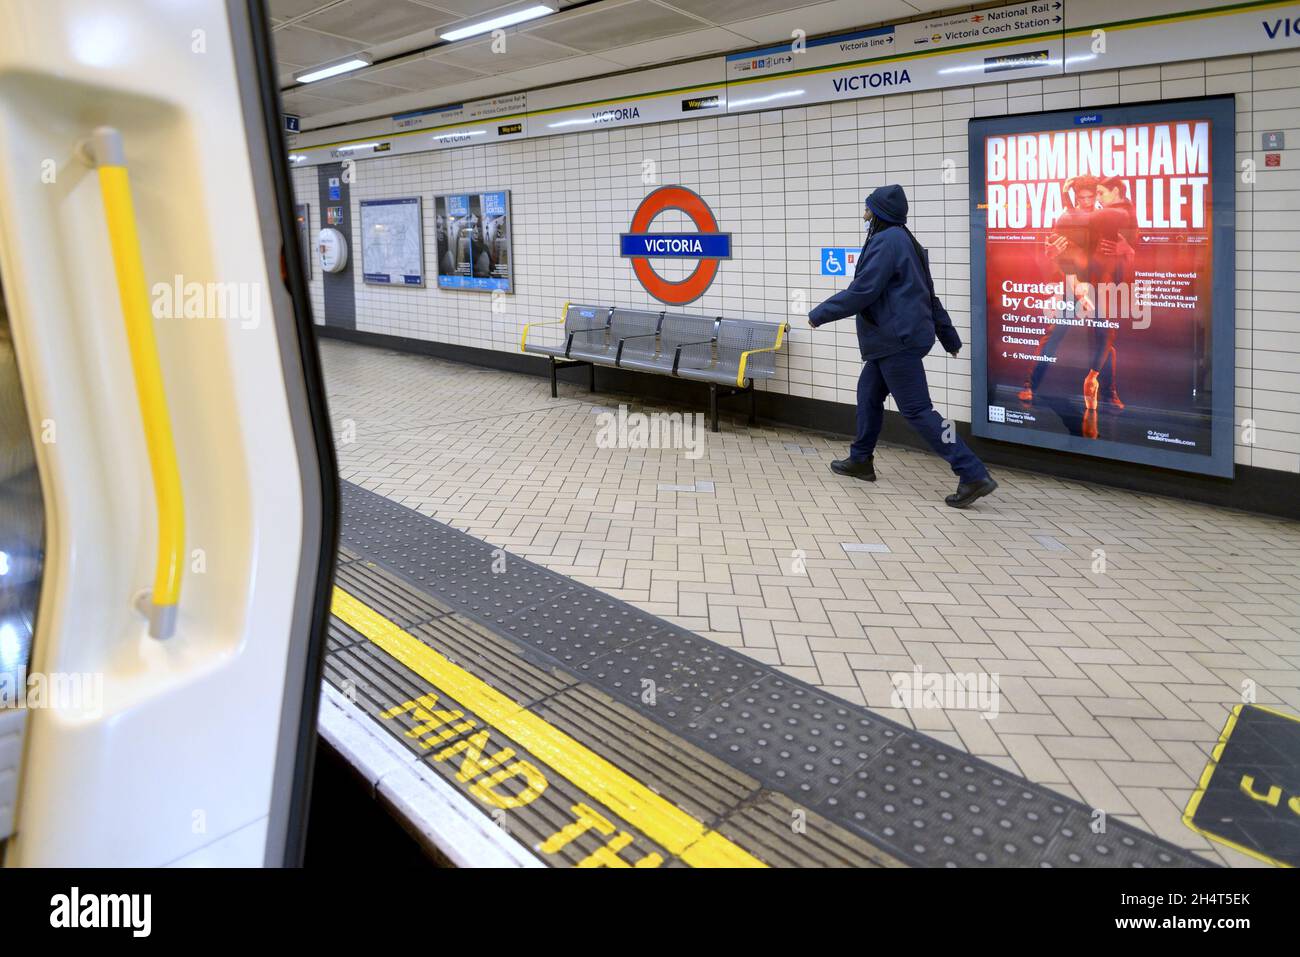 Londra, Inghilterra, Regno Unito. Metropolitana di Londra - stazione metropolitana Victoria Foto Stock